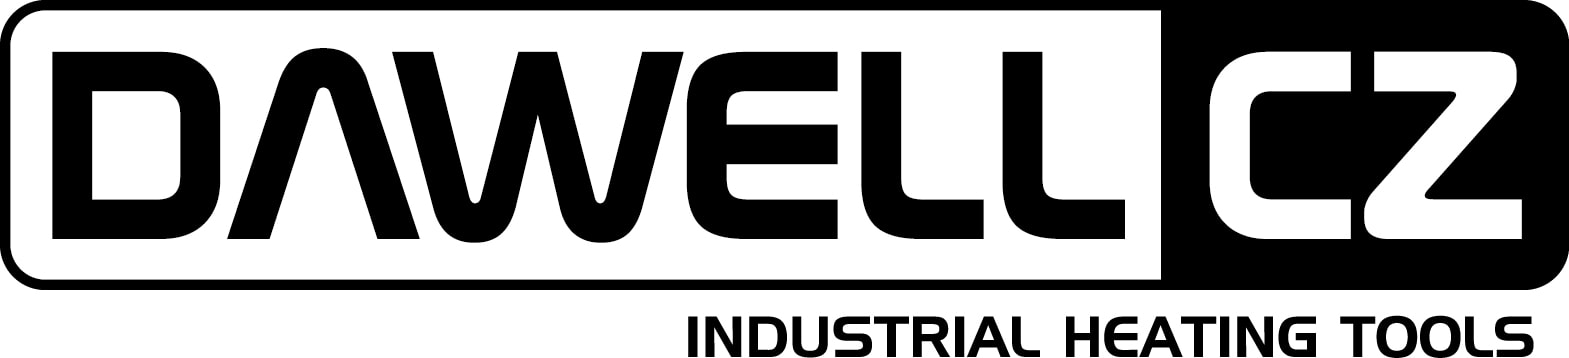 Dawell IHT logo whi essential college Vybuduj nesmrtelnou a excelentně prosperující firmu!